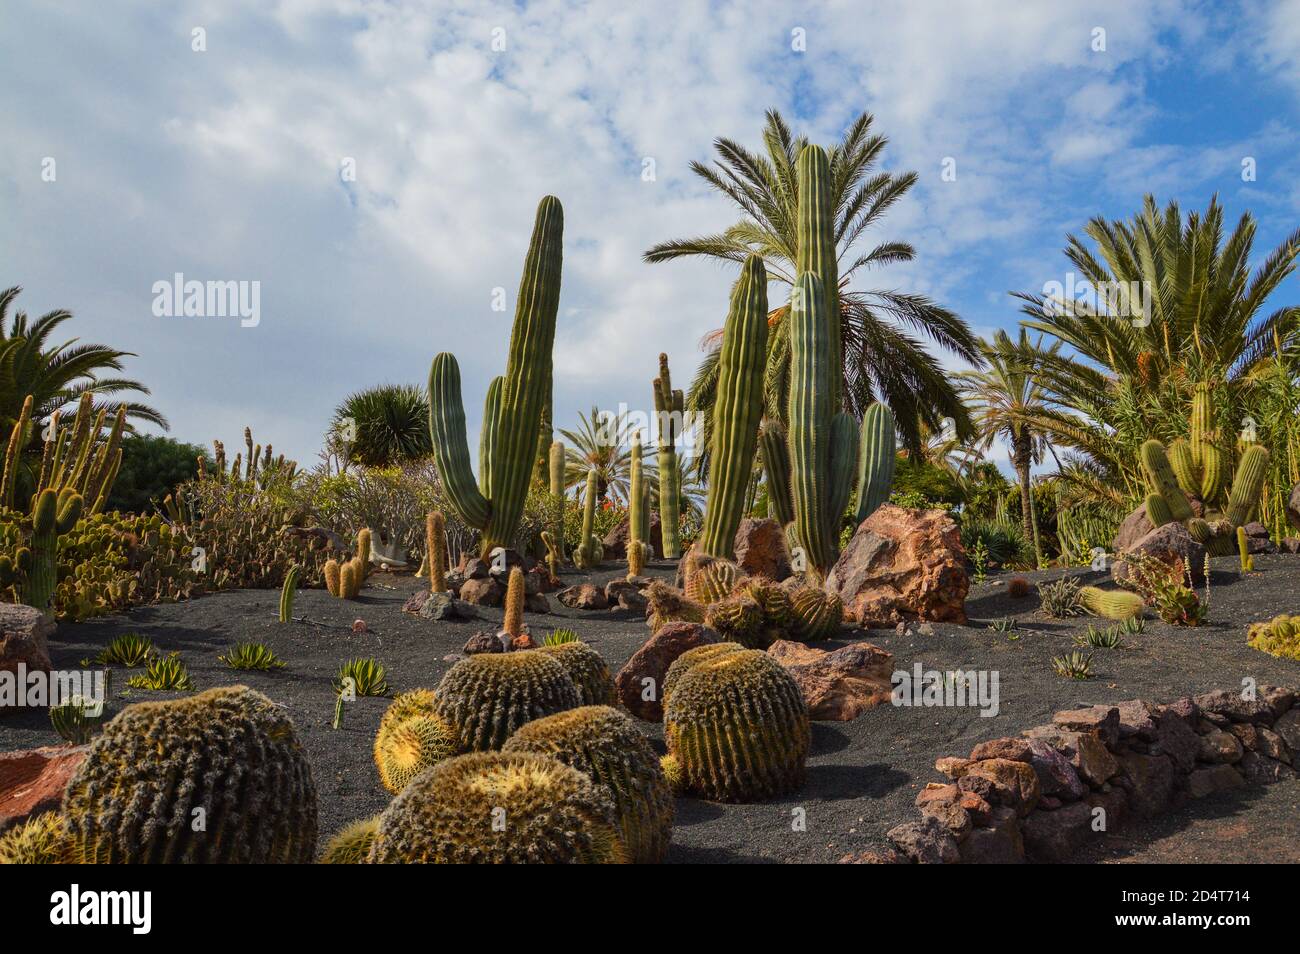 Cactus garden Stock Photo